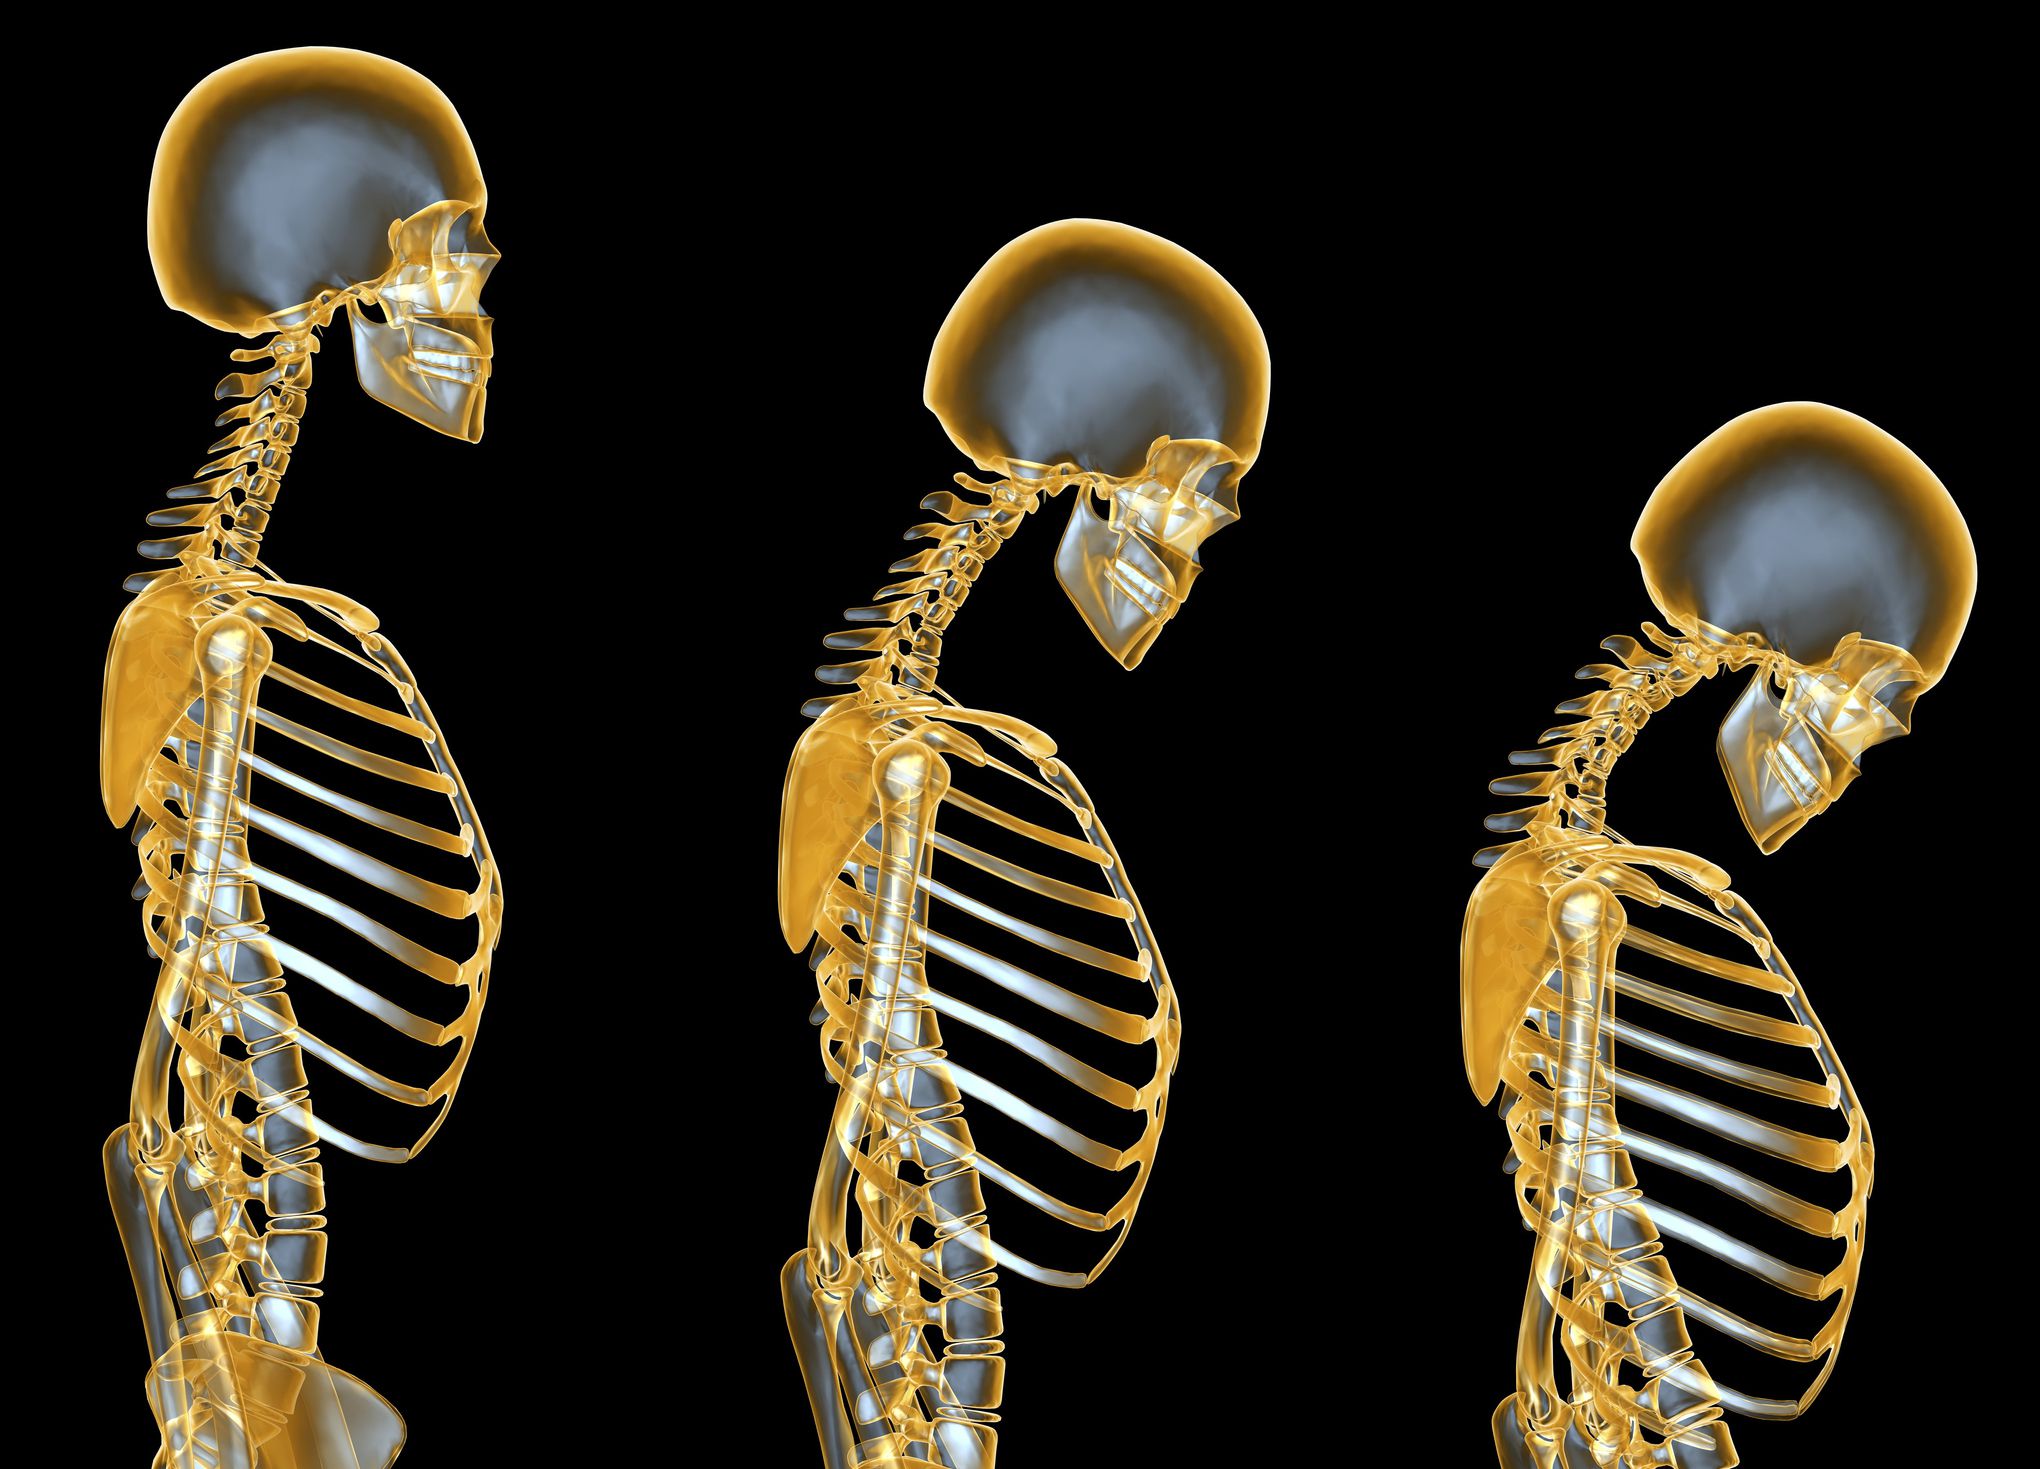 پوکی استخوان(Osteoporosis) را بیشتر بشناسید